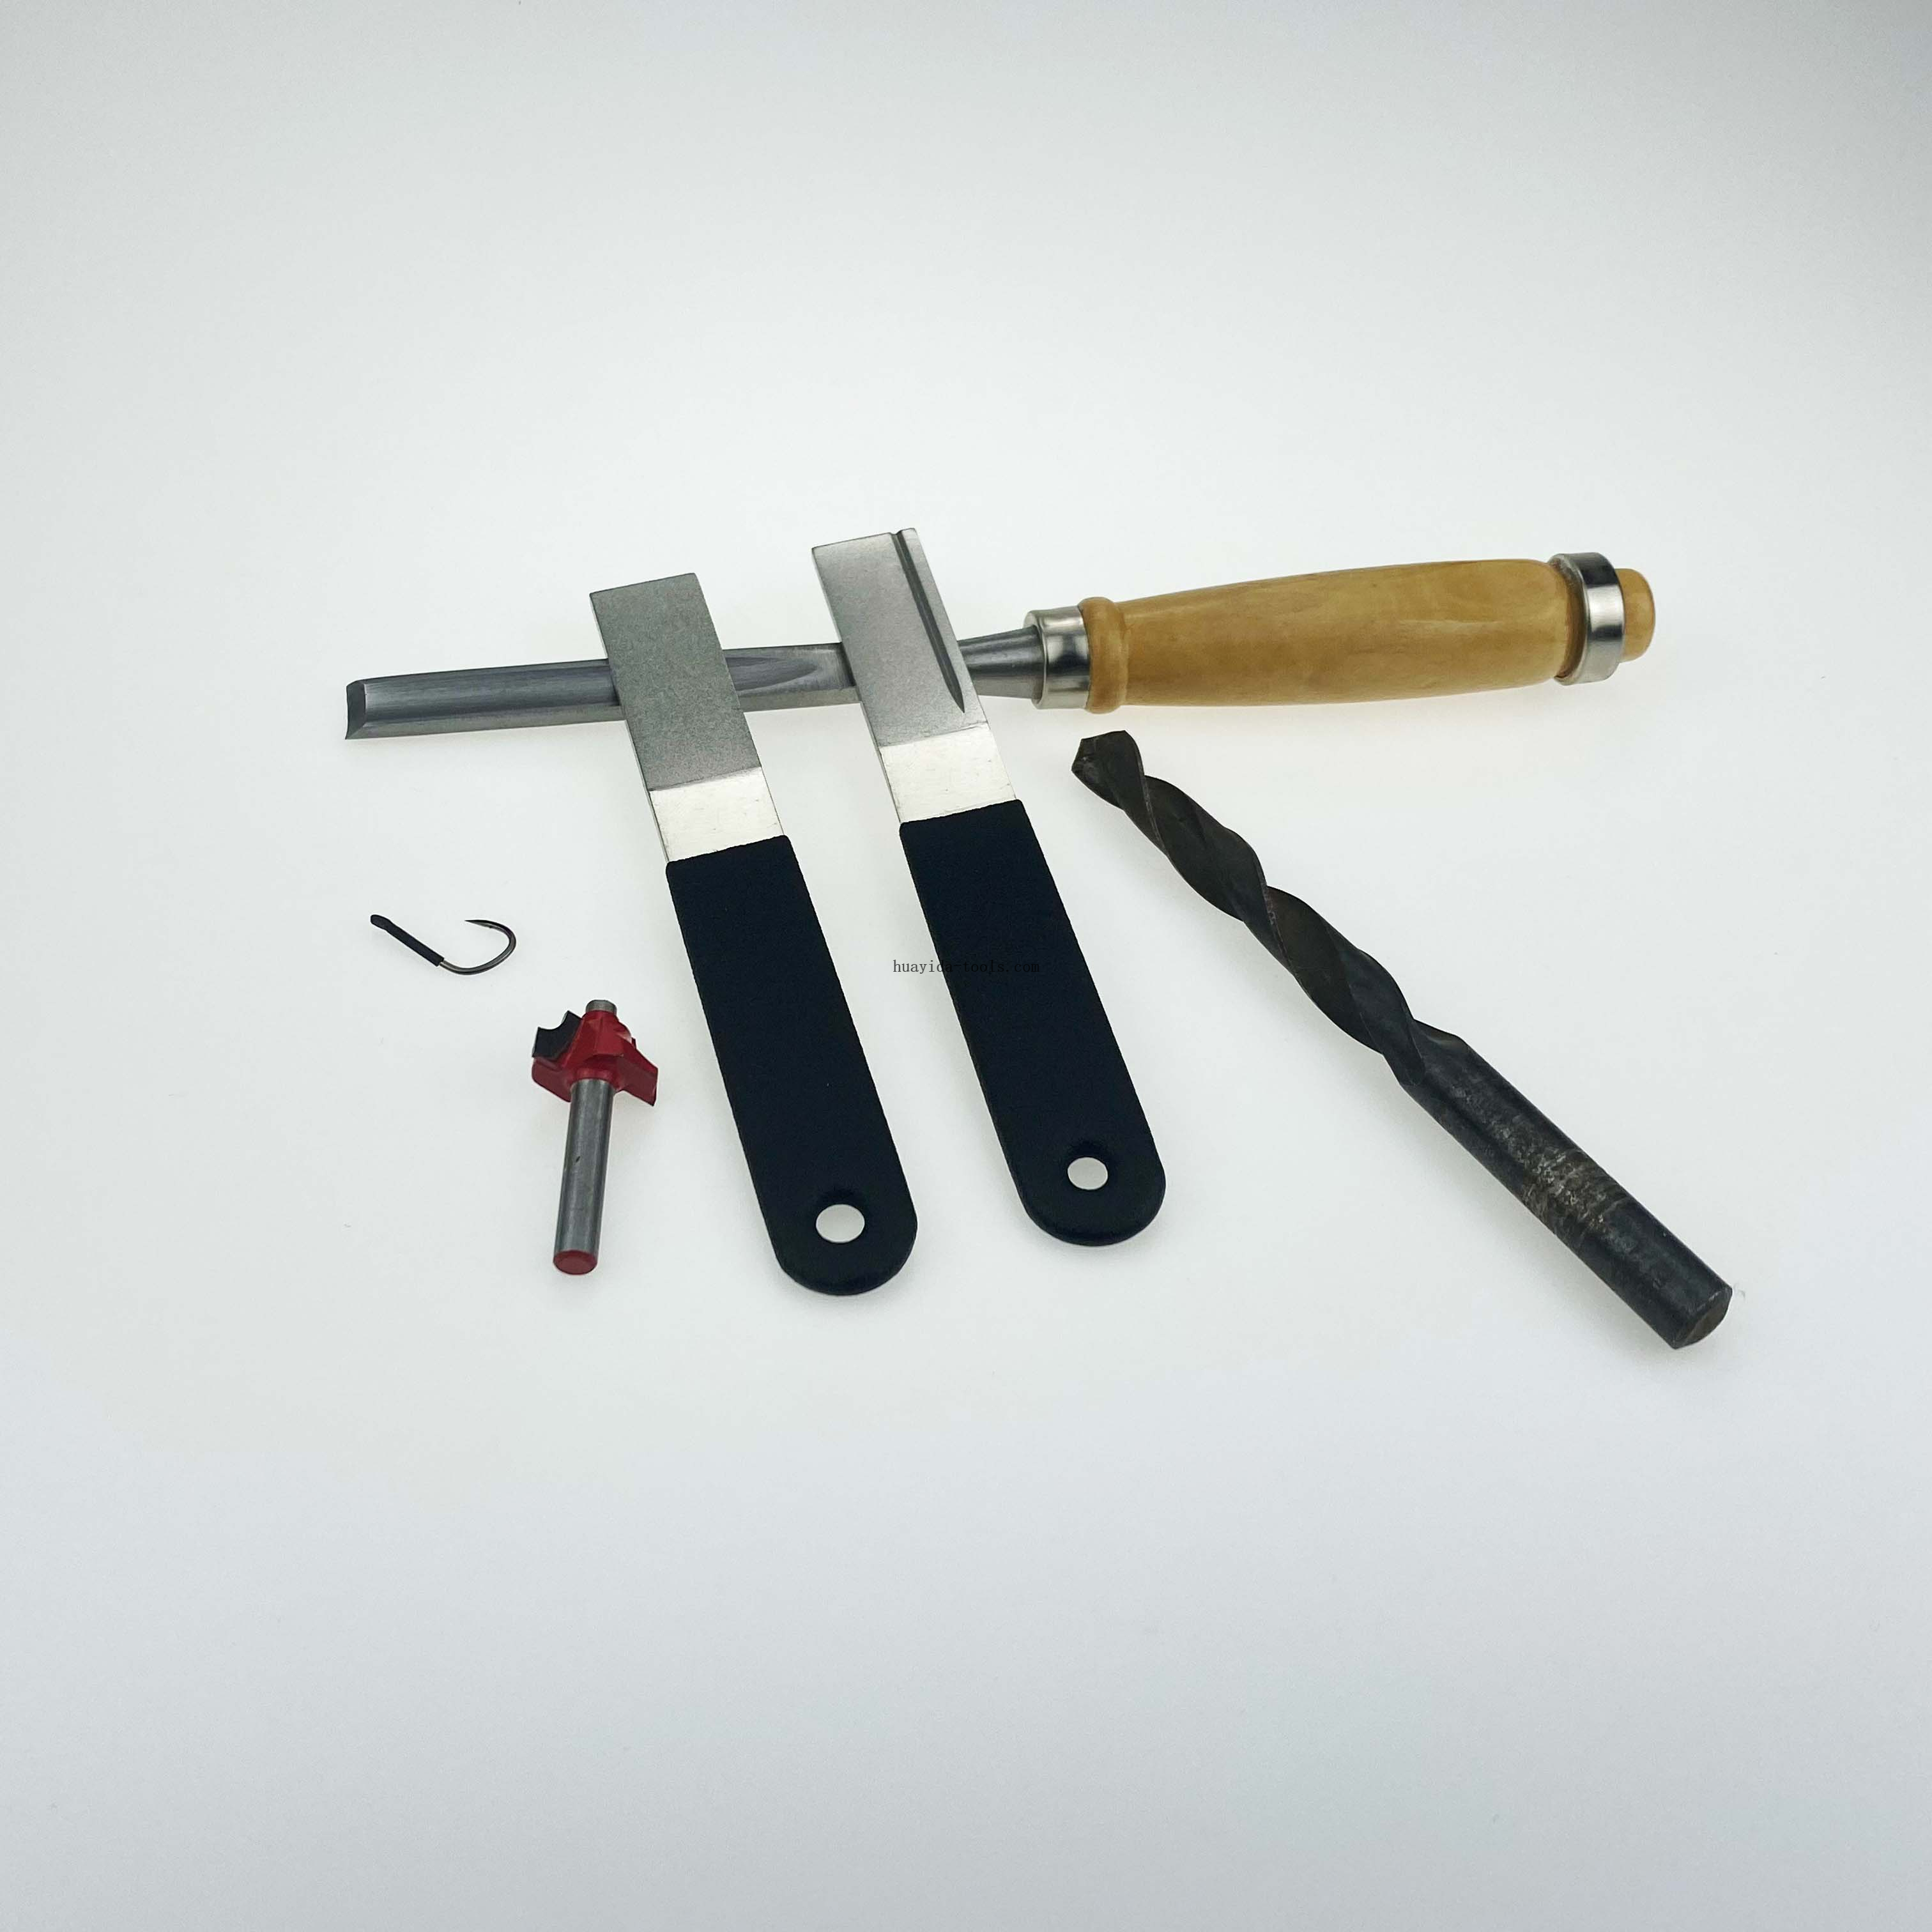 Diamond Knife Sharpener for Garden Gardening Knives and fish hook